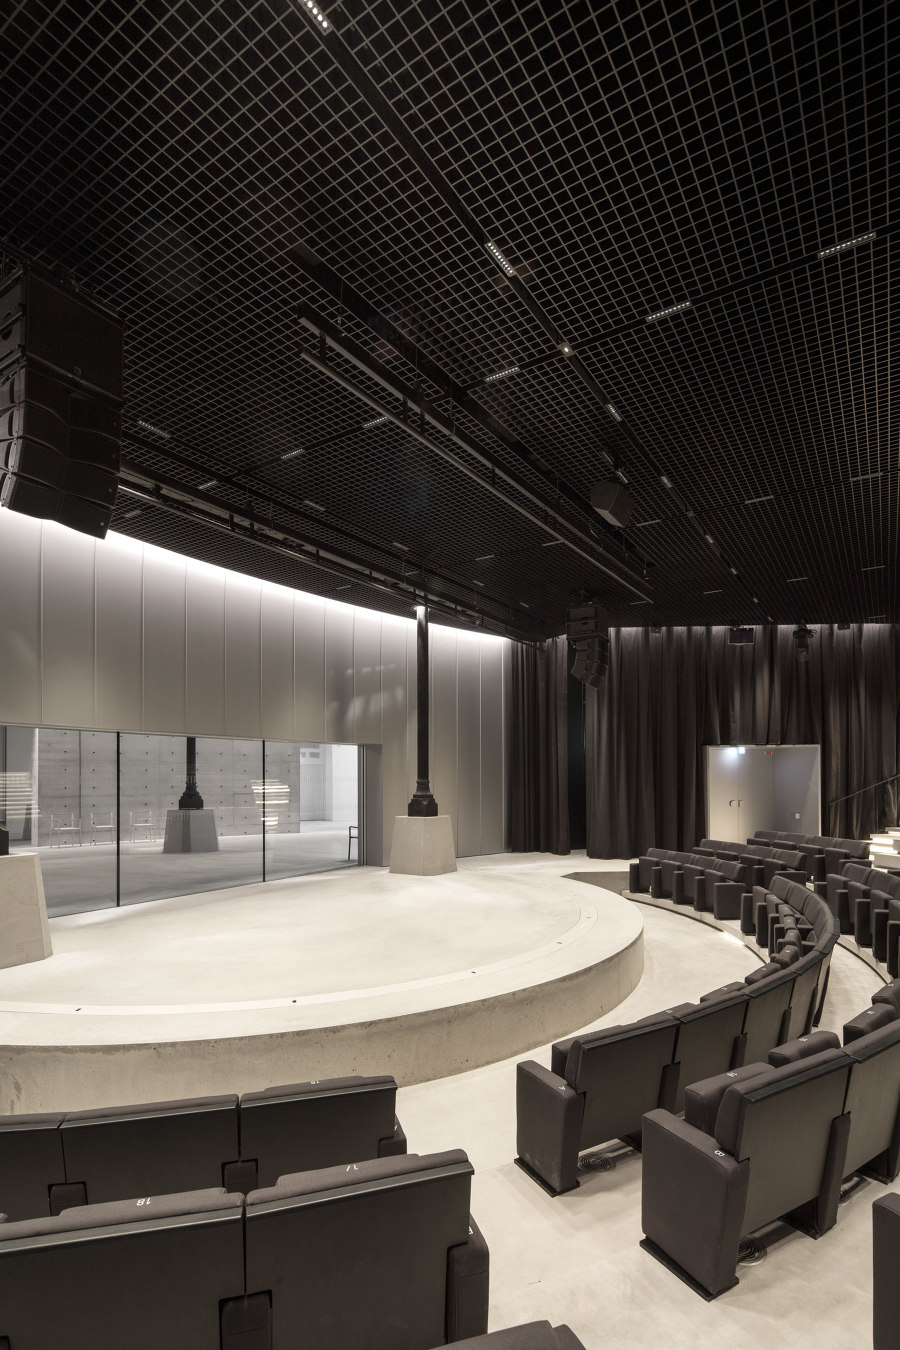 La Bourse de Commerce de Tadao Ando Architect & Associates + NeM Architectes + Pierre-Antoine Gatier | Bâtiments administratifs